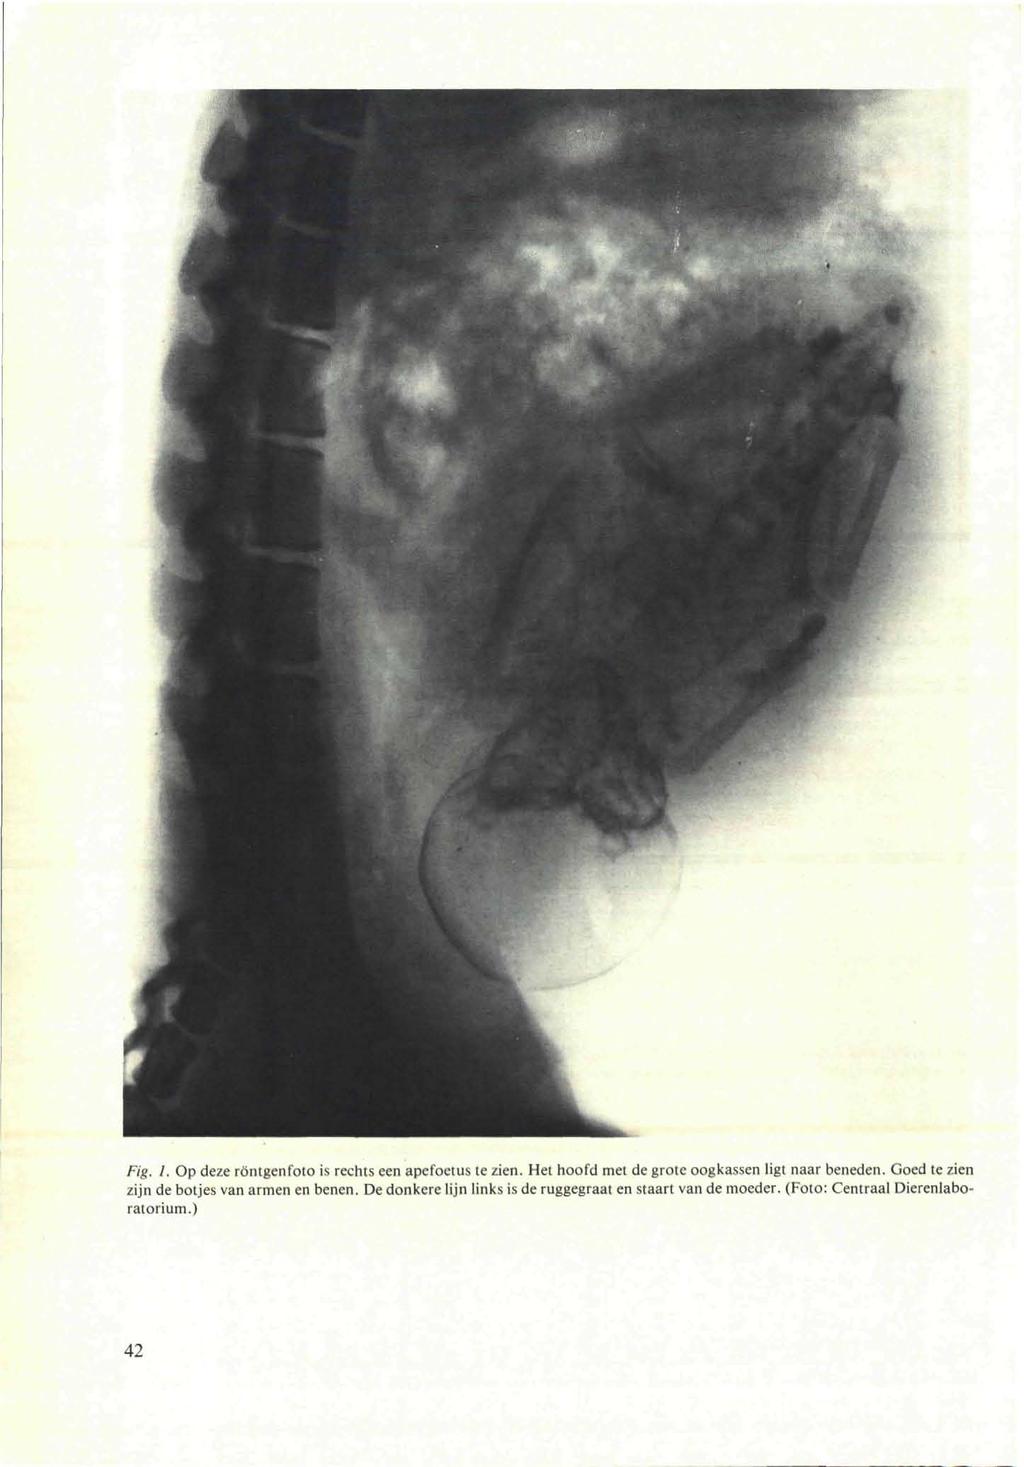 Fig. J. Op deze röntgenfoto is rechts een apefoetus te zien. Het hoofd met de grote oogkassen ligt naar beneden.